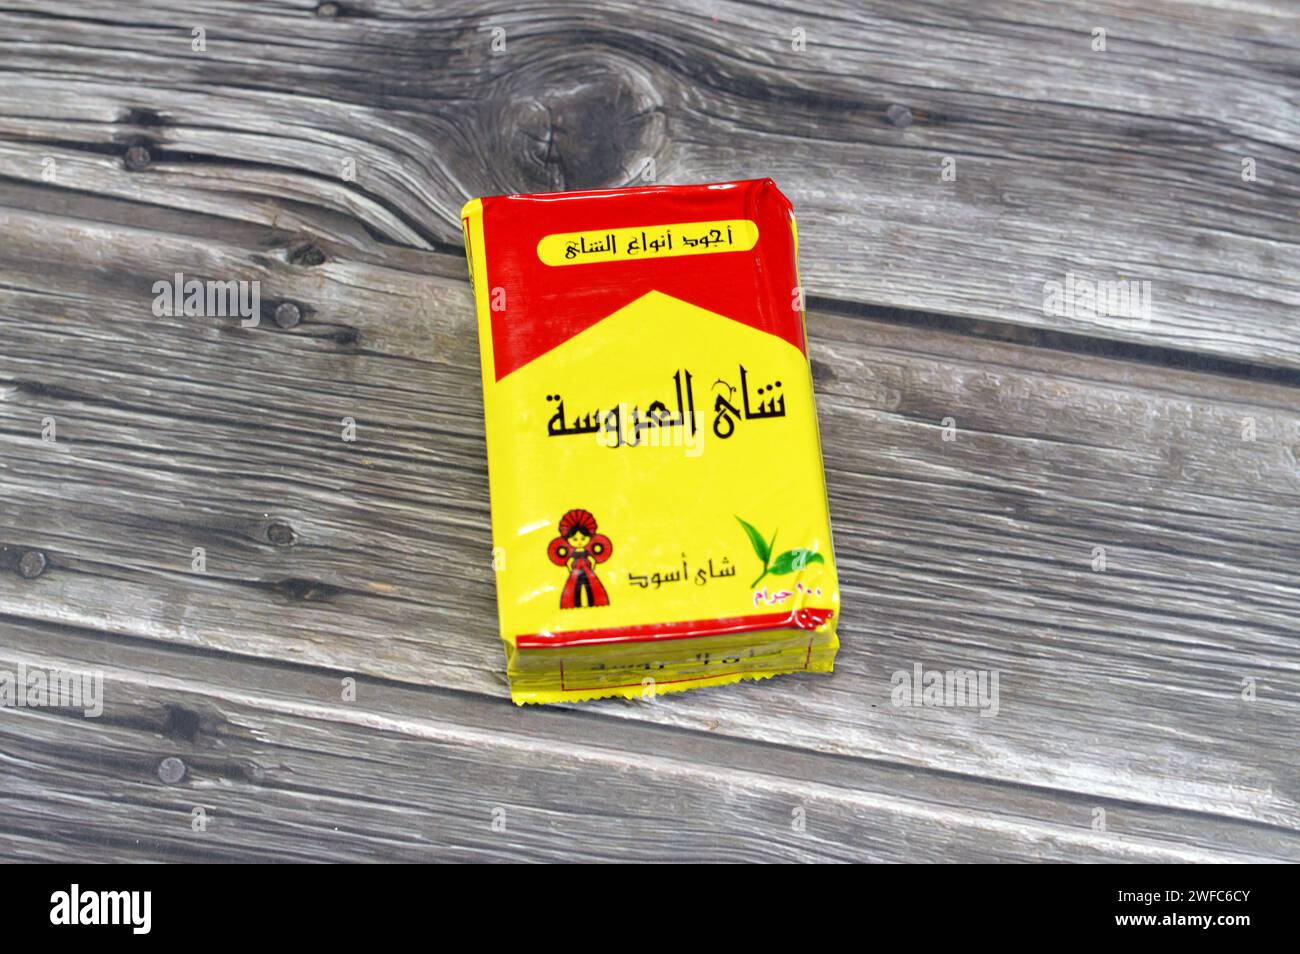 Egypt tea -Fotos und -Bildmaterial in hoher Auflösung - Seite 14 - Alamy